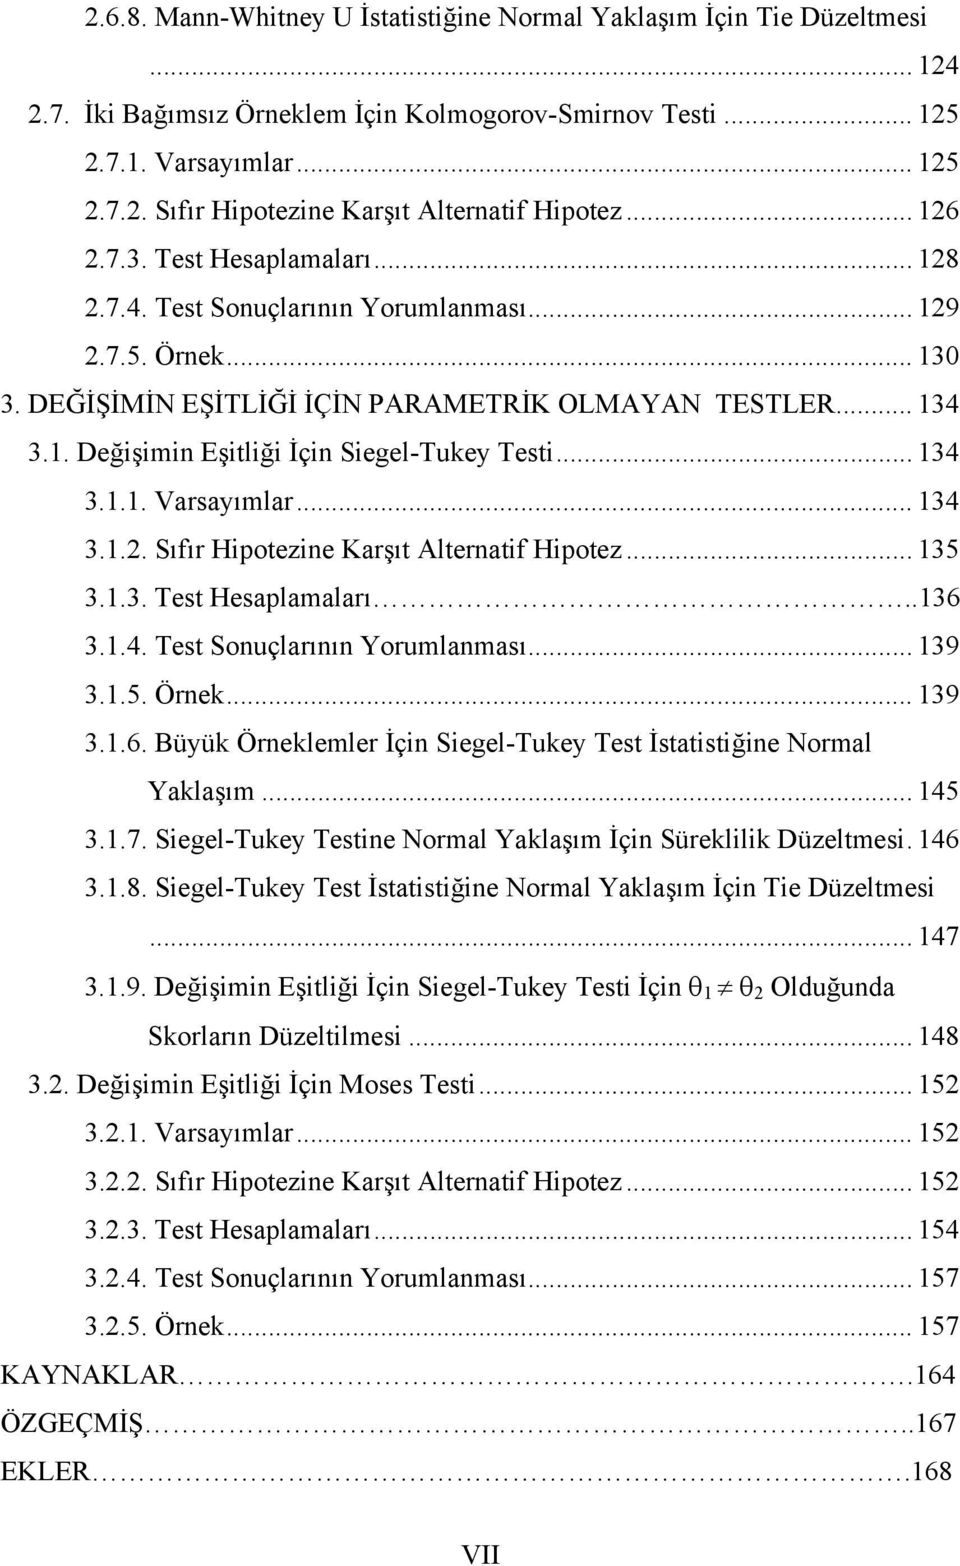 Hpotez 35 33 Test Hesaplamaları 36 34 Test Sonuçlarının Yorumlanması 39 35 Örnek 39 36 Büyük Örneklemler İçn Segel-Tukey Test İstatstğne Normal Yaklaşım 45 37 Segel-Tukey Testne Normal Yaklaşım İçn